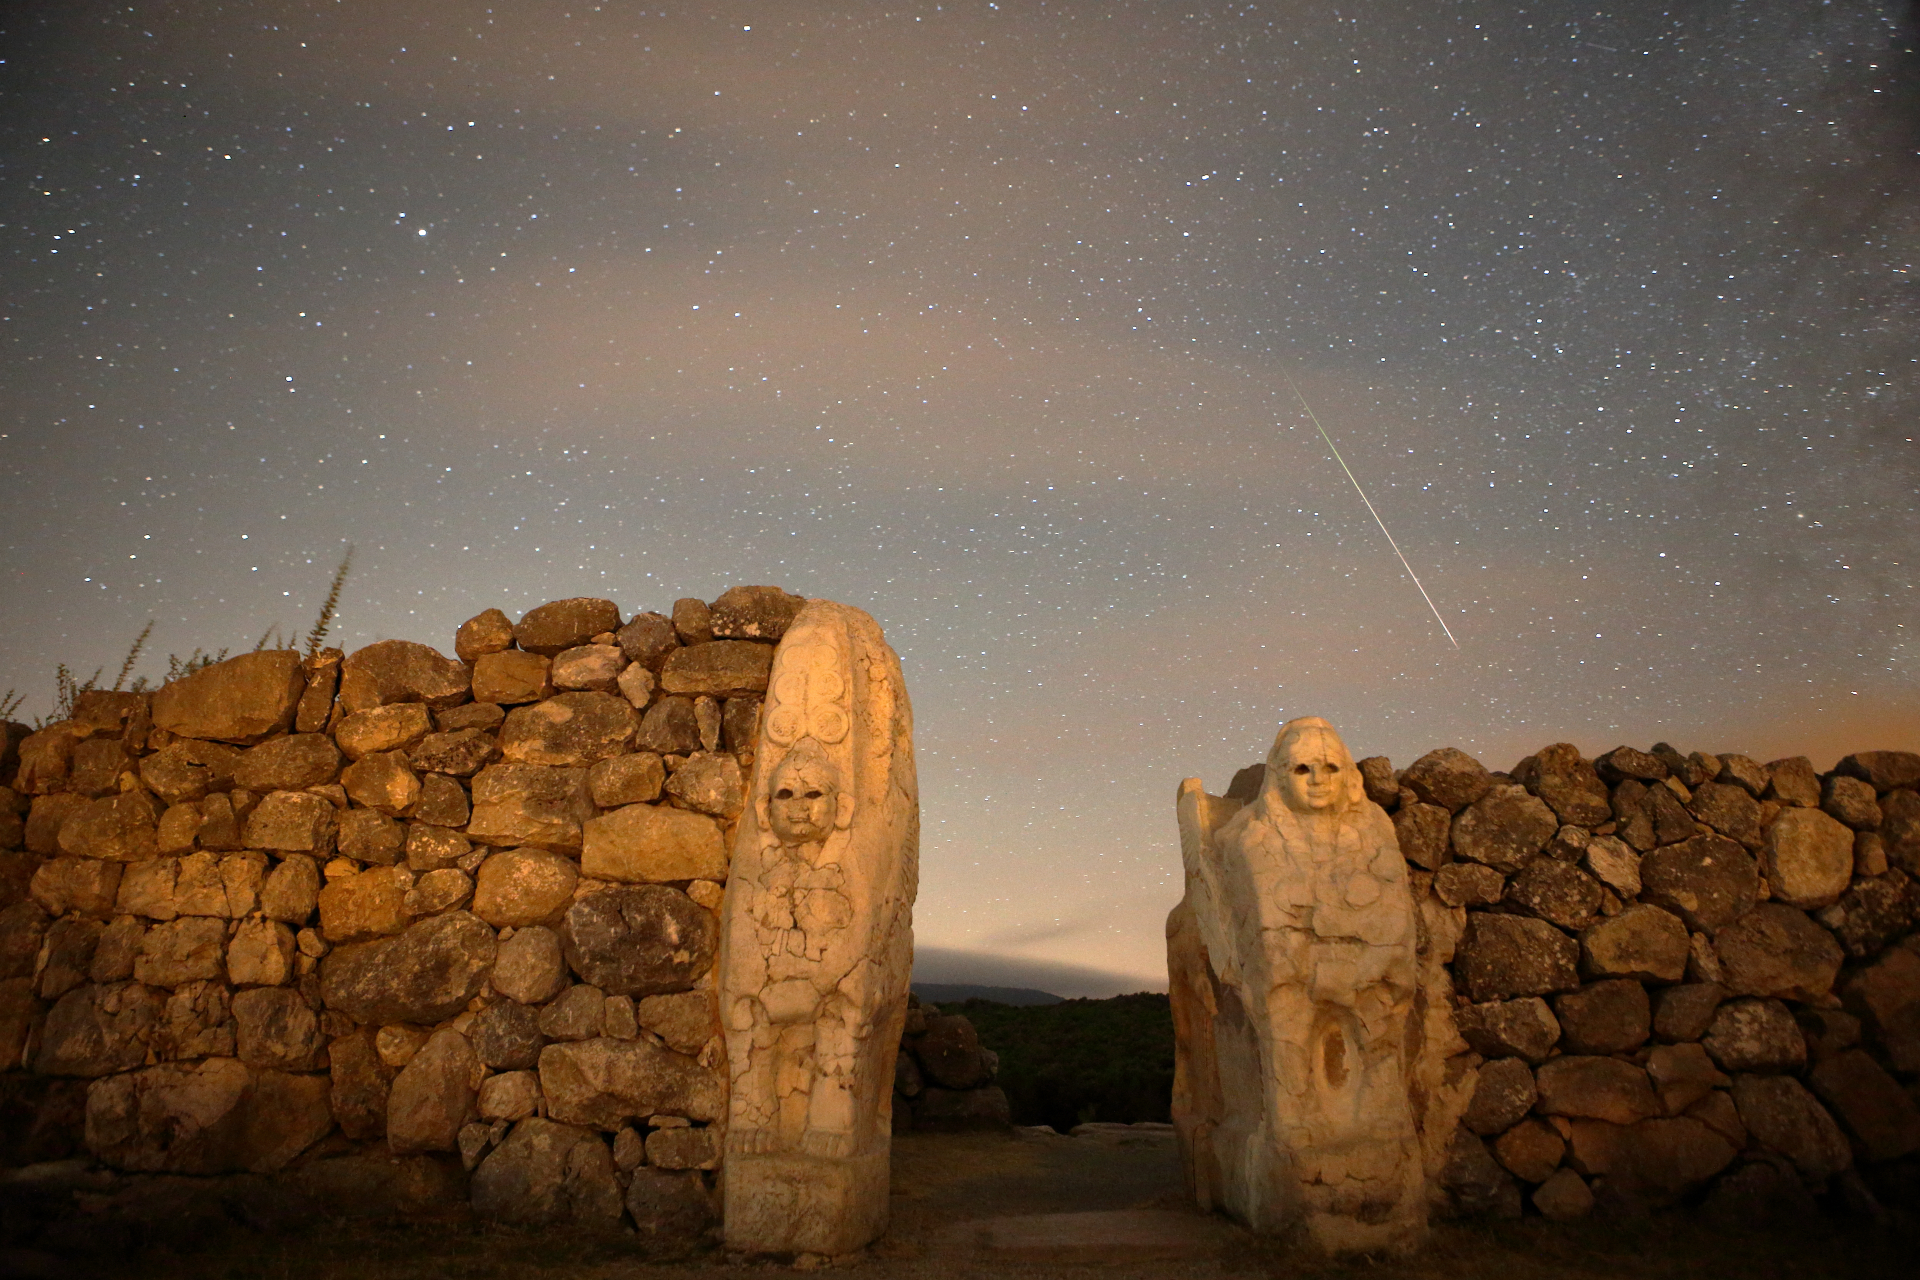 Una racha de meteoros prominente en el cielo sobre un muro de piedra con dos figuras talladas en la roca.